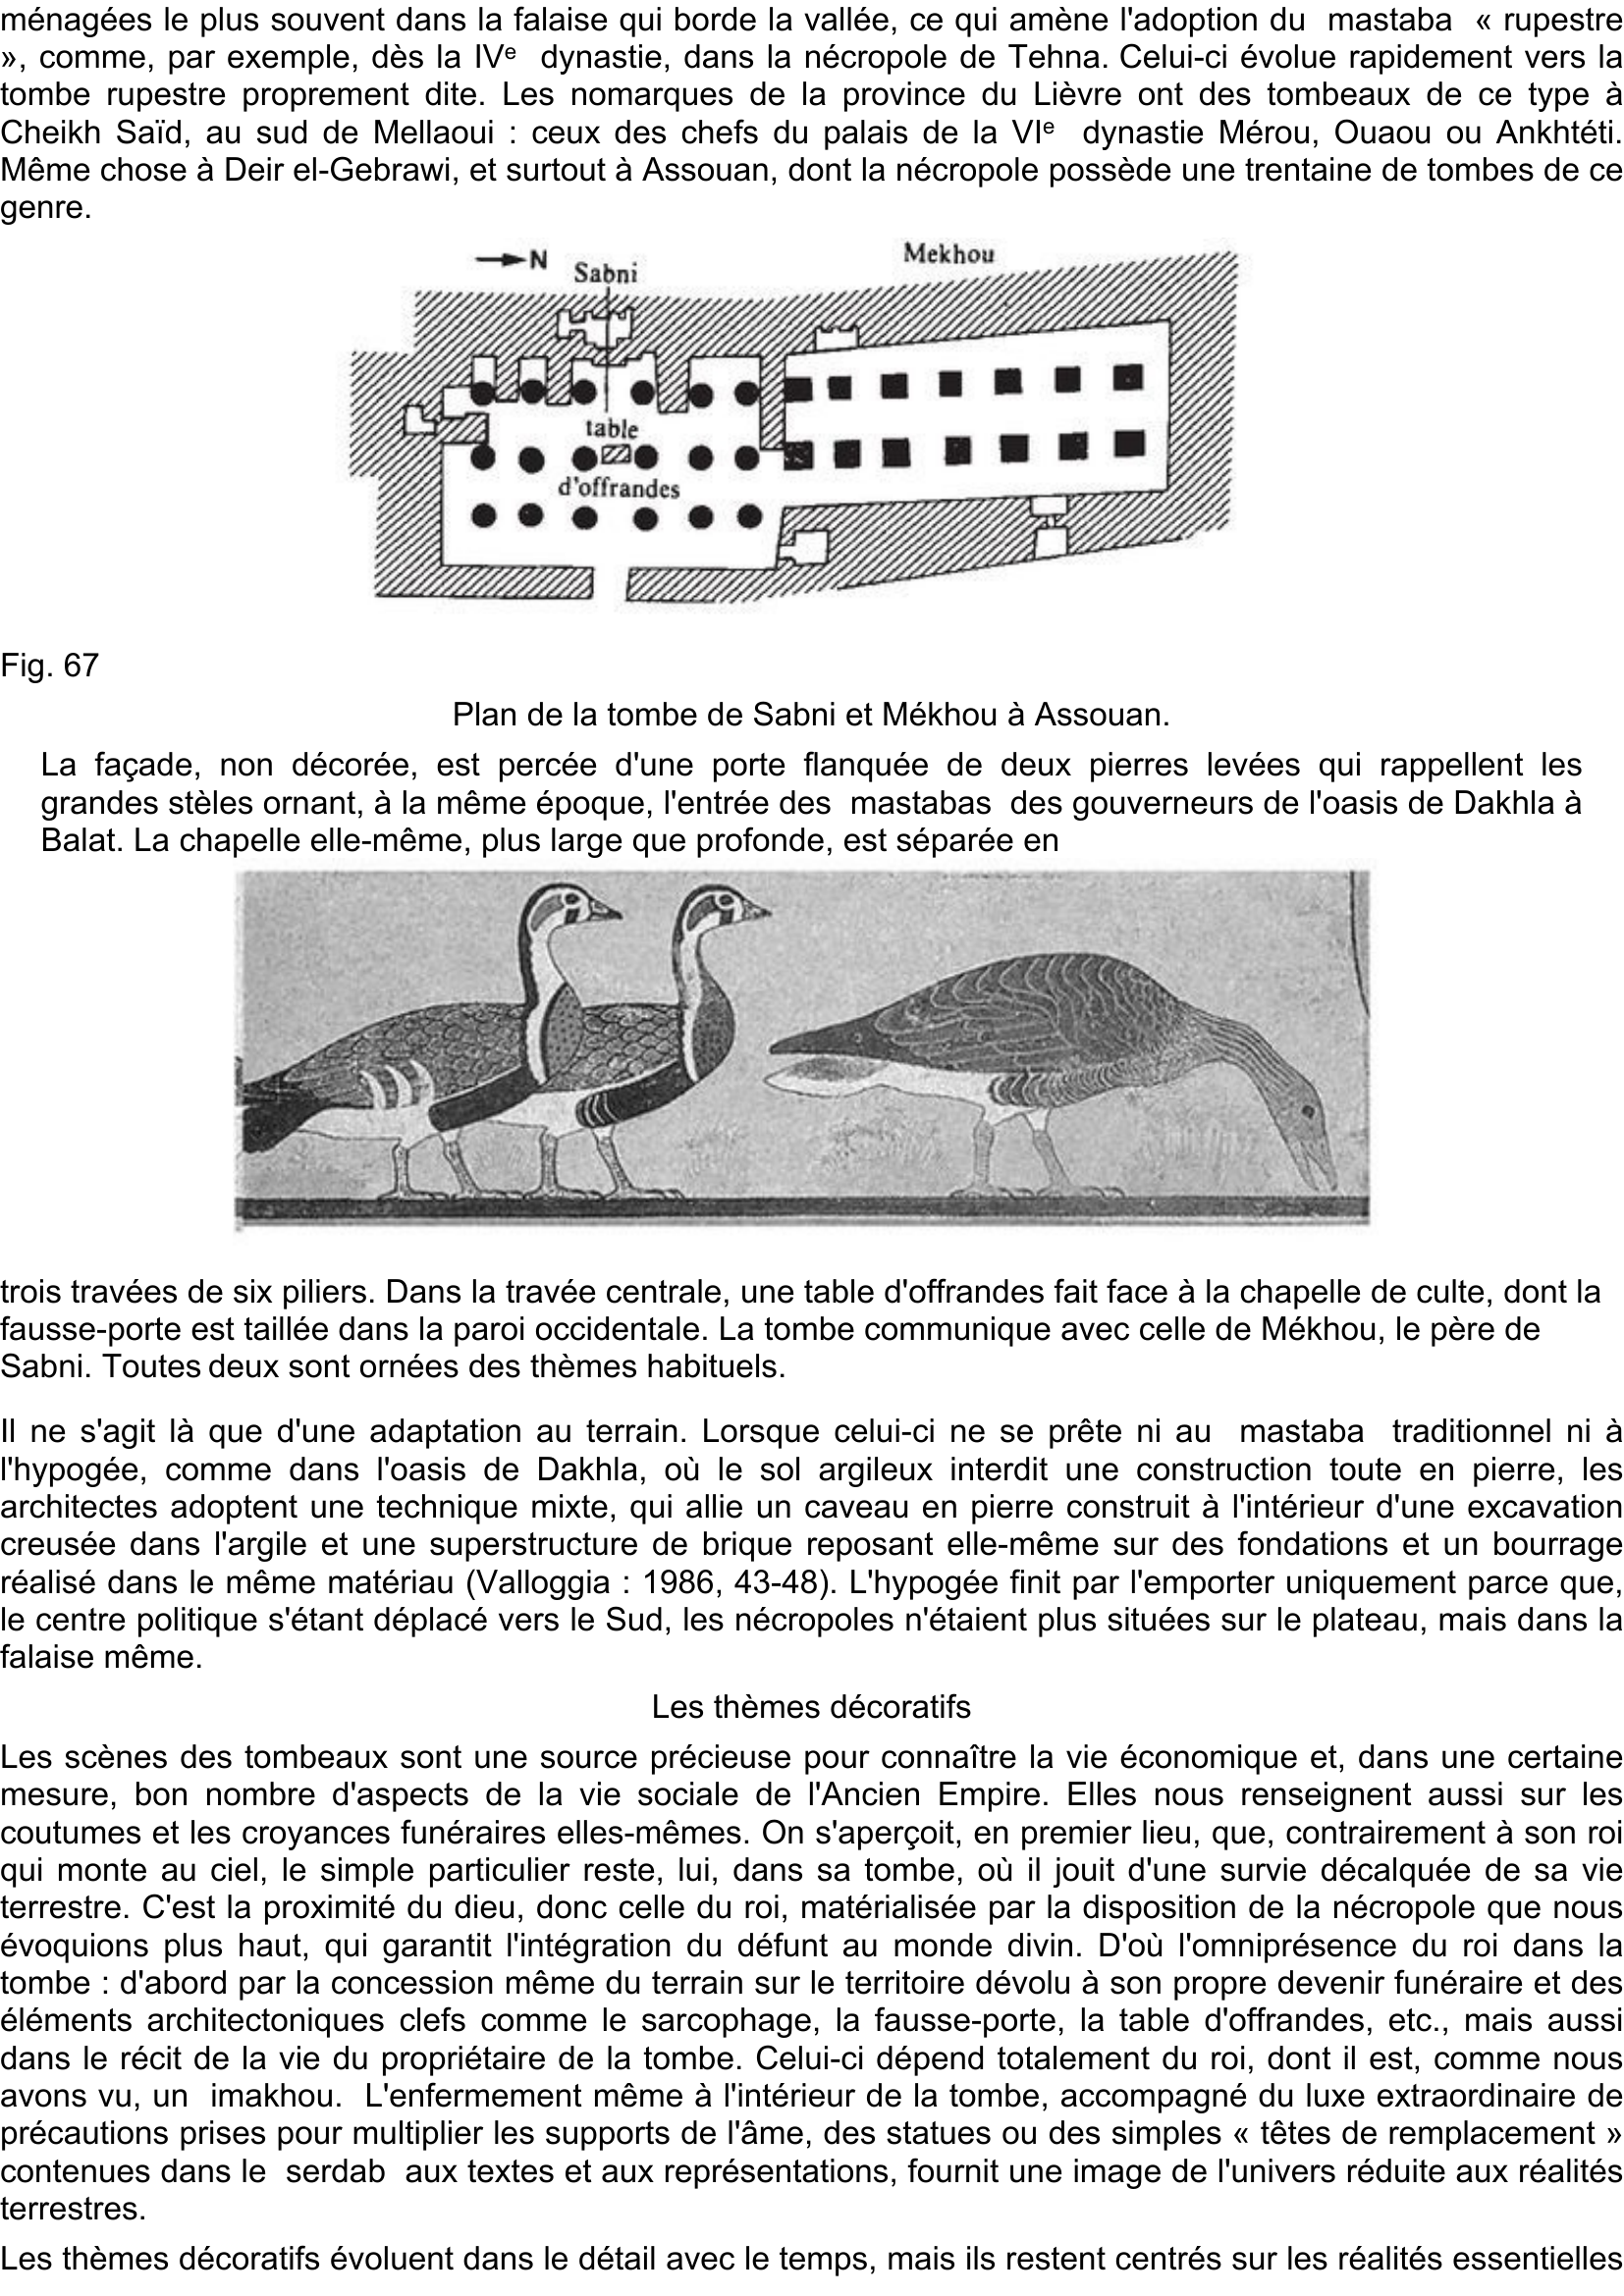 Prévisualisation du document Fig. 65
Chapelle de Ti : chasse dans les marais.

Fig. 66
Ci-dessous.